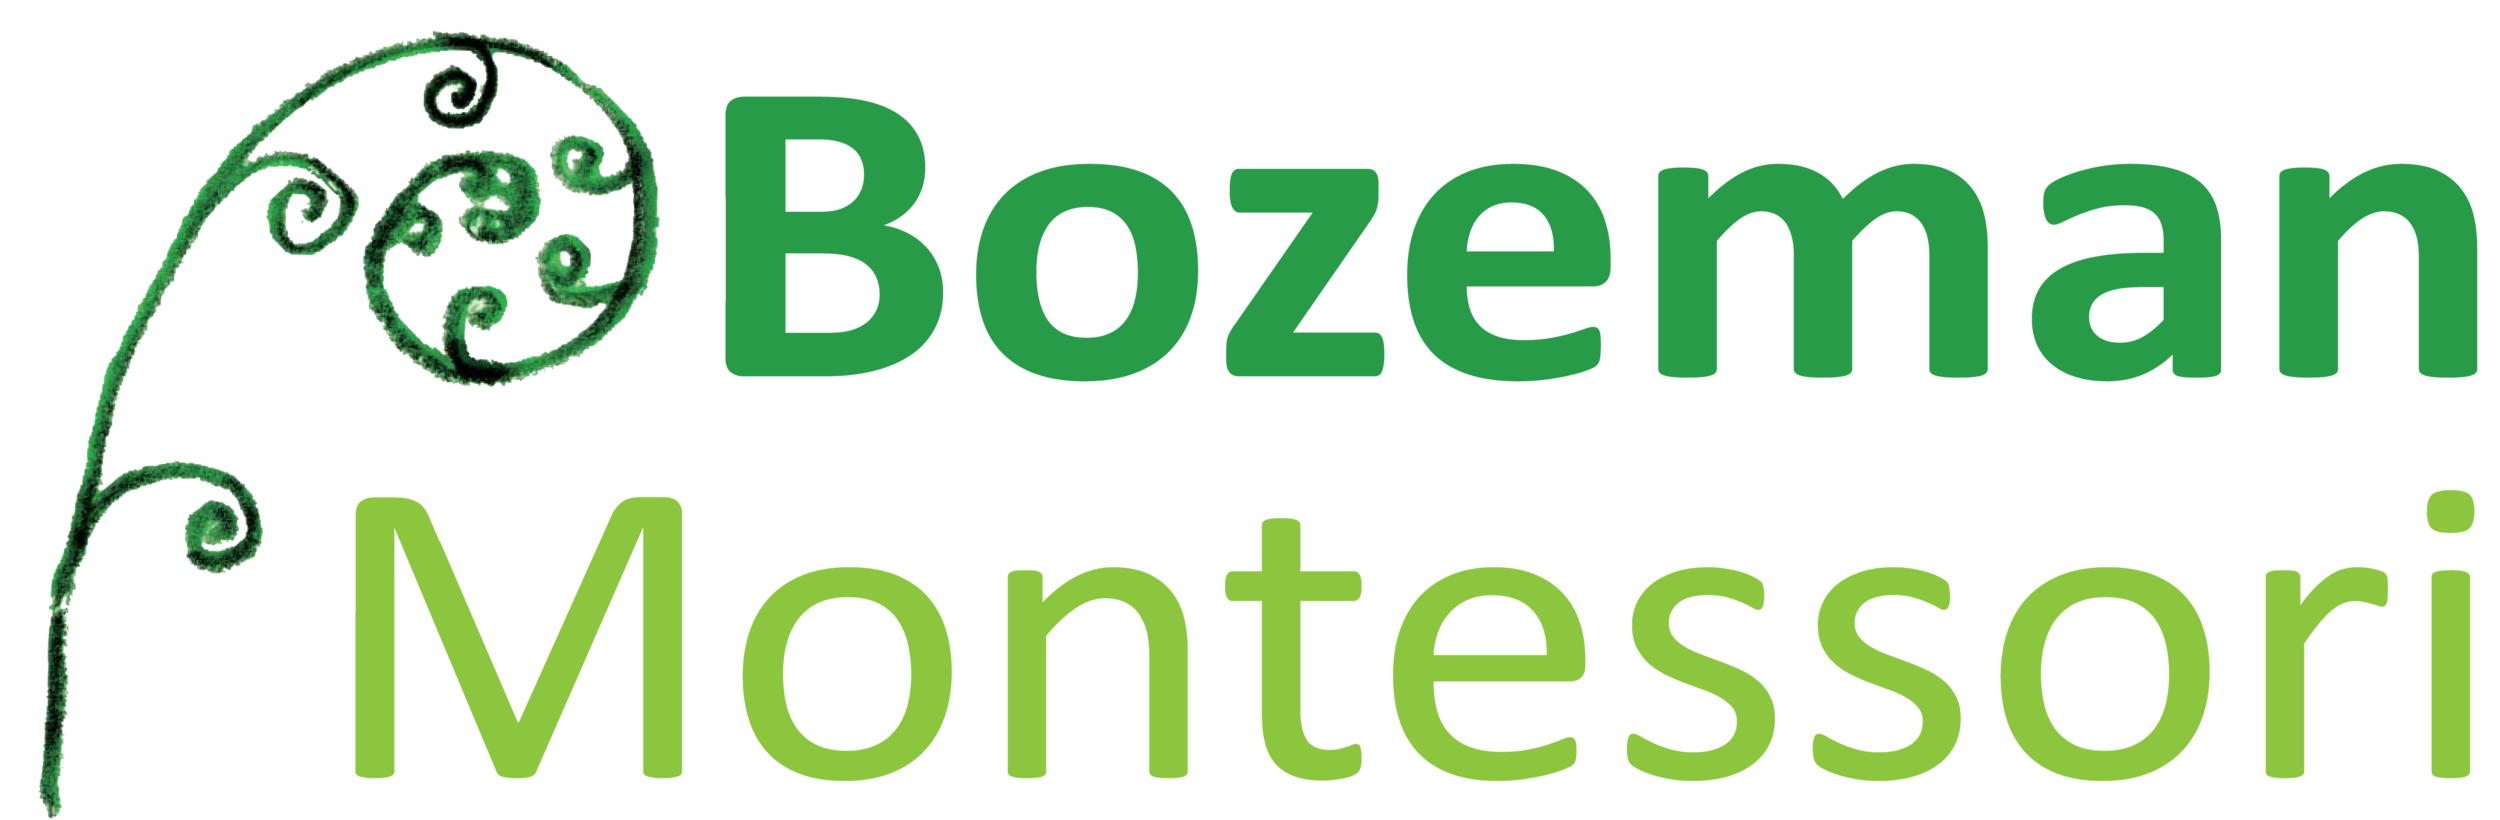 Bozeman Montessori